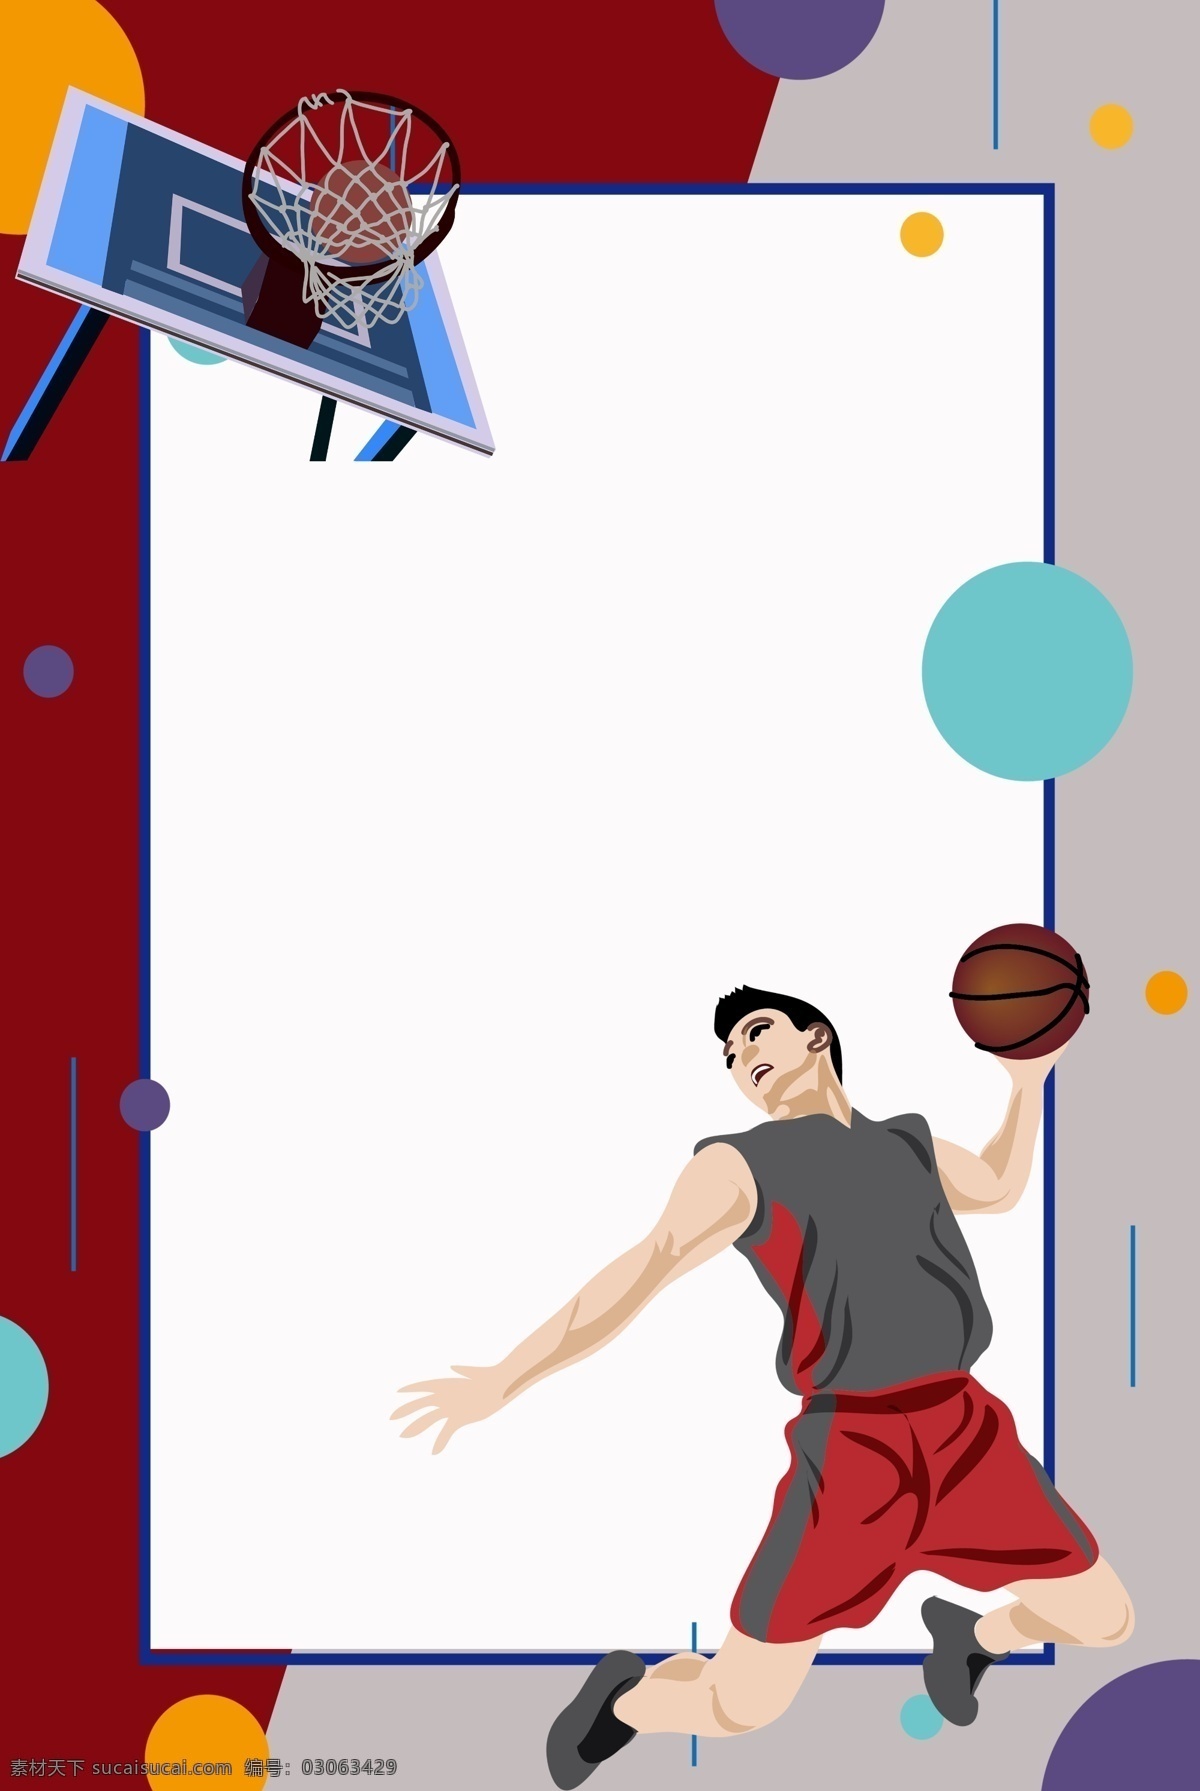 健身 篮球 男孩 背景 打篮球的男孩 篮球框 装饰 健身的男孩 红色篮球服 体育运动 卡通插画 运动